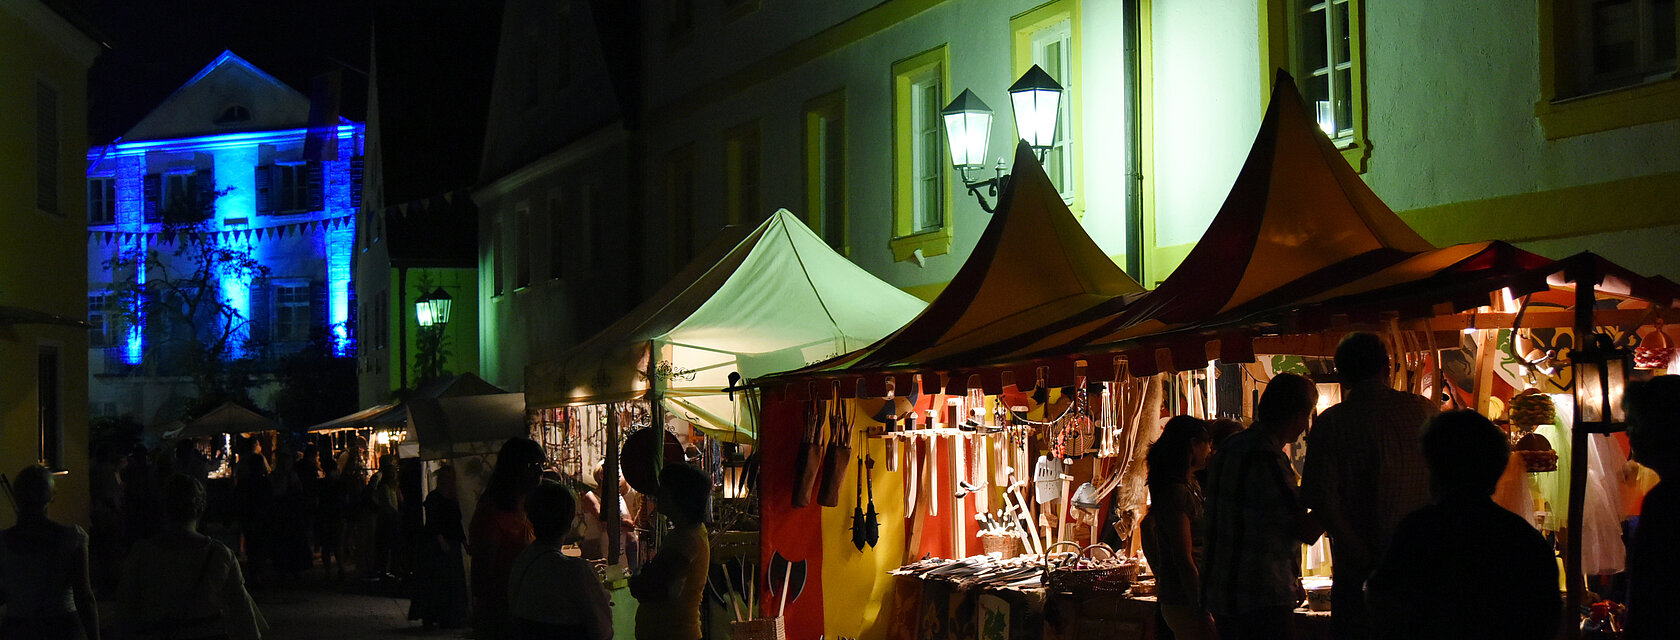 Abendstimmung beim Historischen Stadtfest Monheim